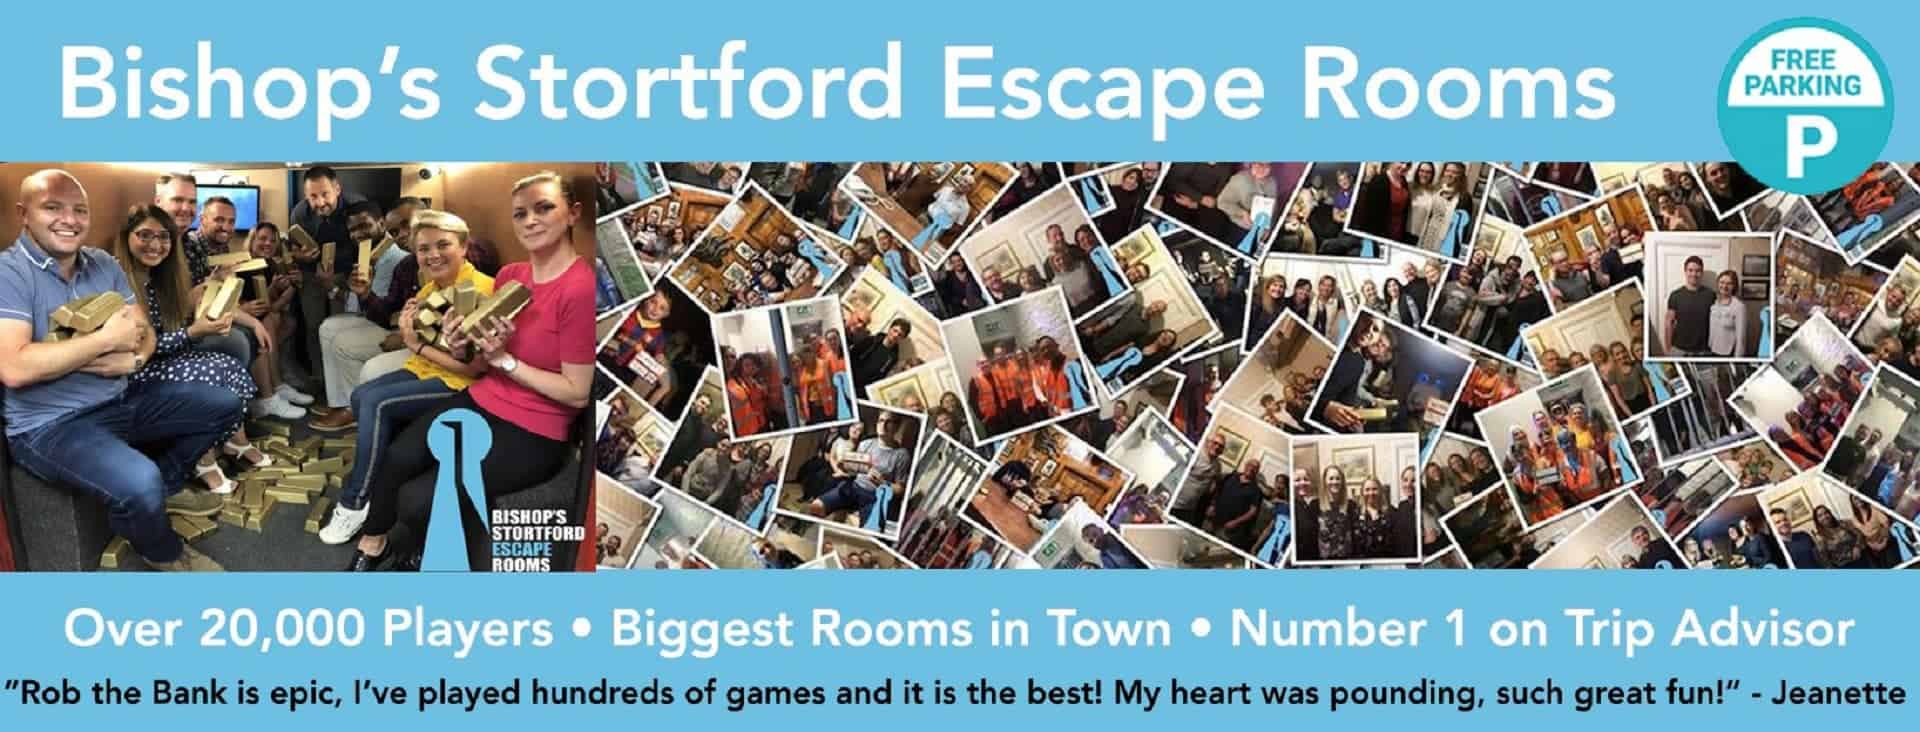 Bishops Stortford Escape Rooms in UK